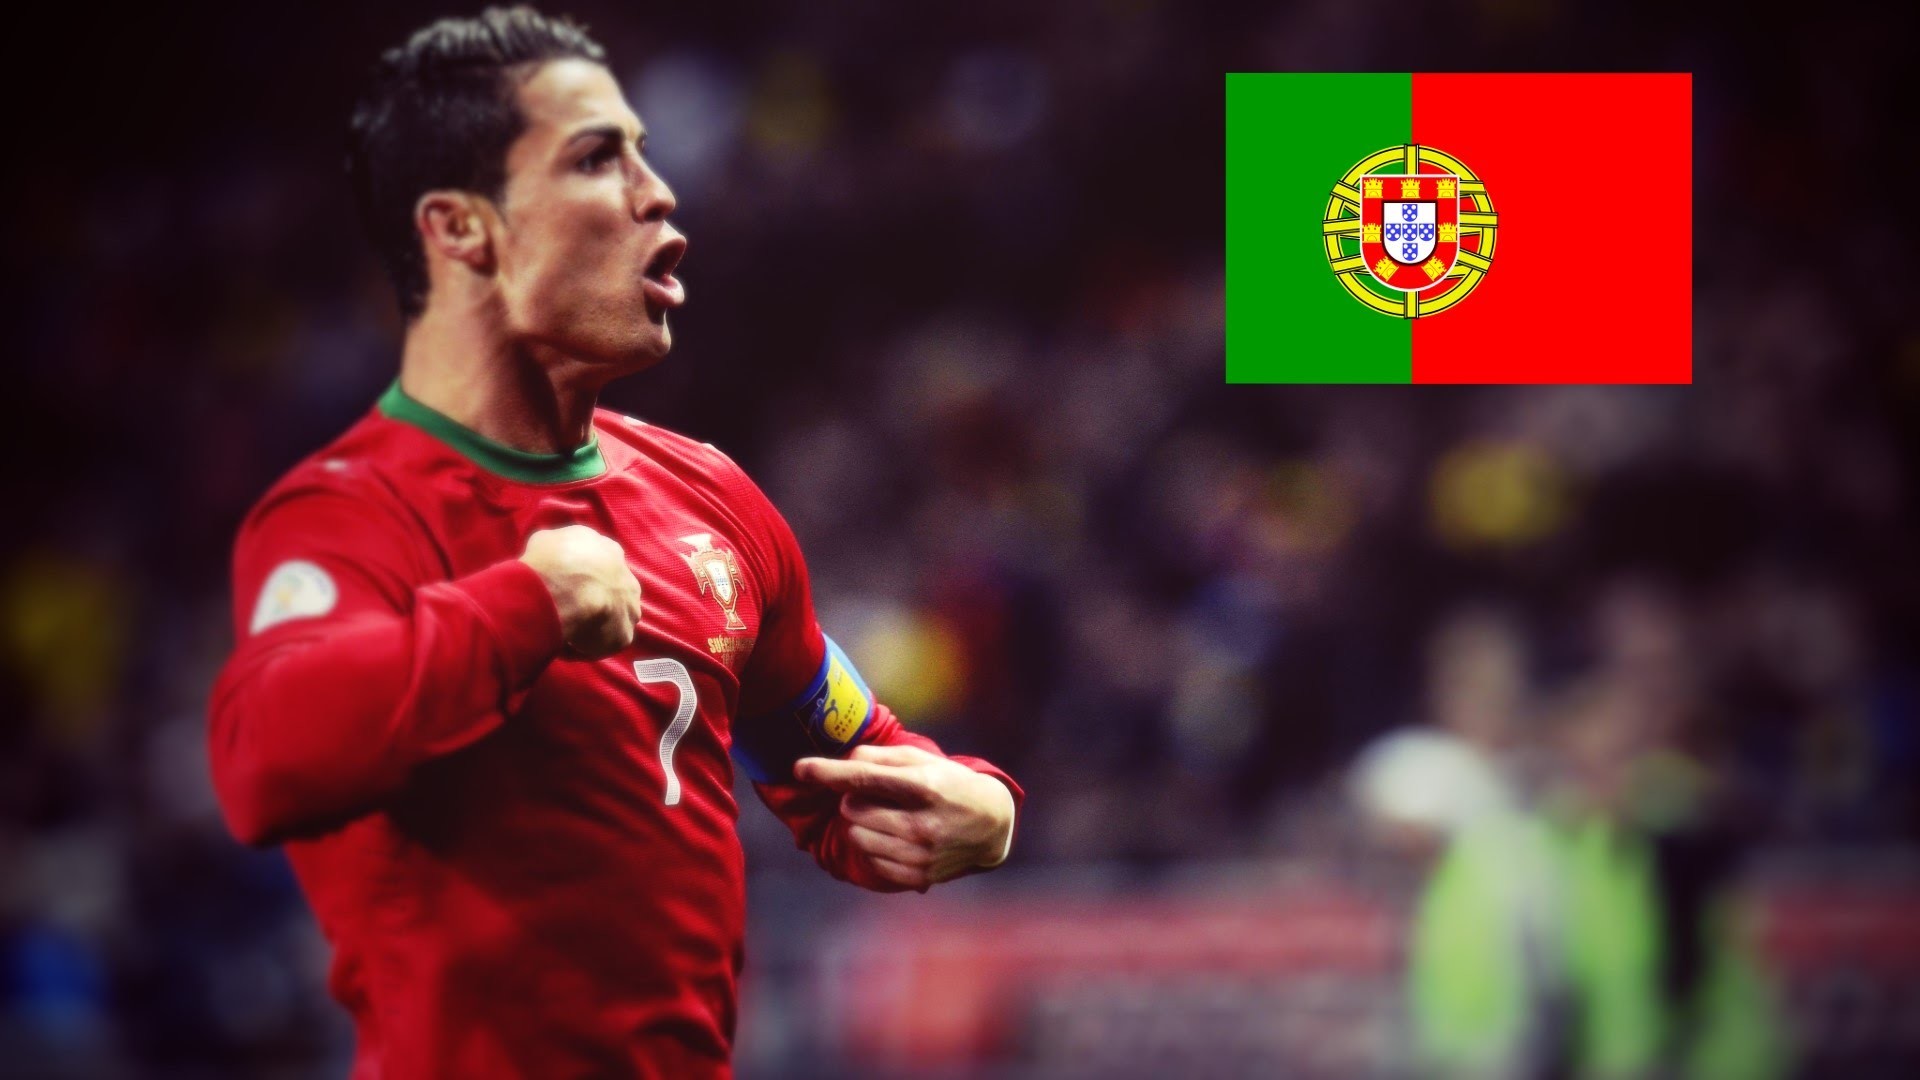 1920x1080 Cristiano Ronaldo â Best Dribbling Skills & Goals â Portugal || HD - YouTube